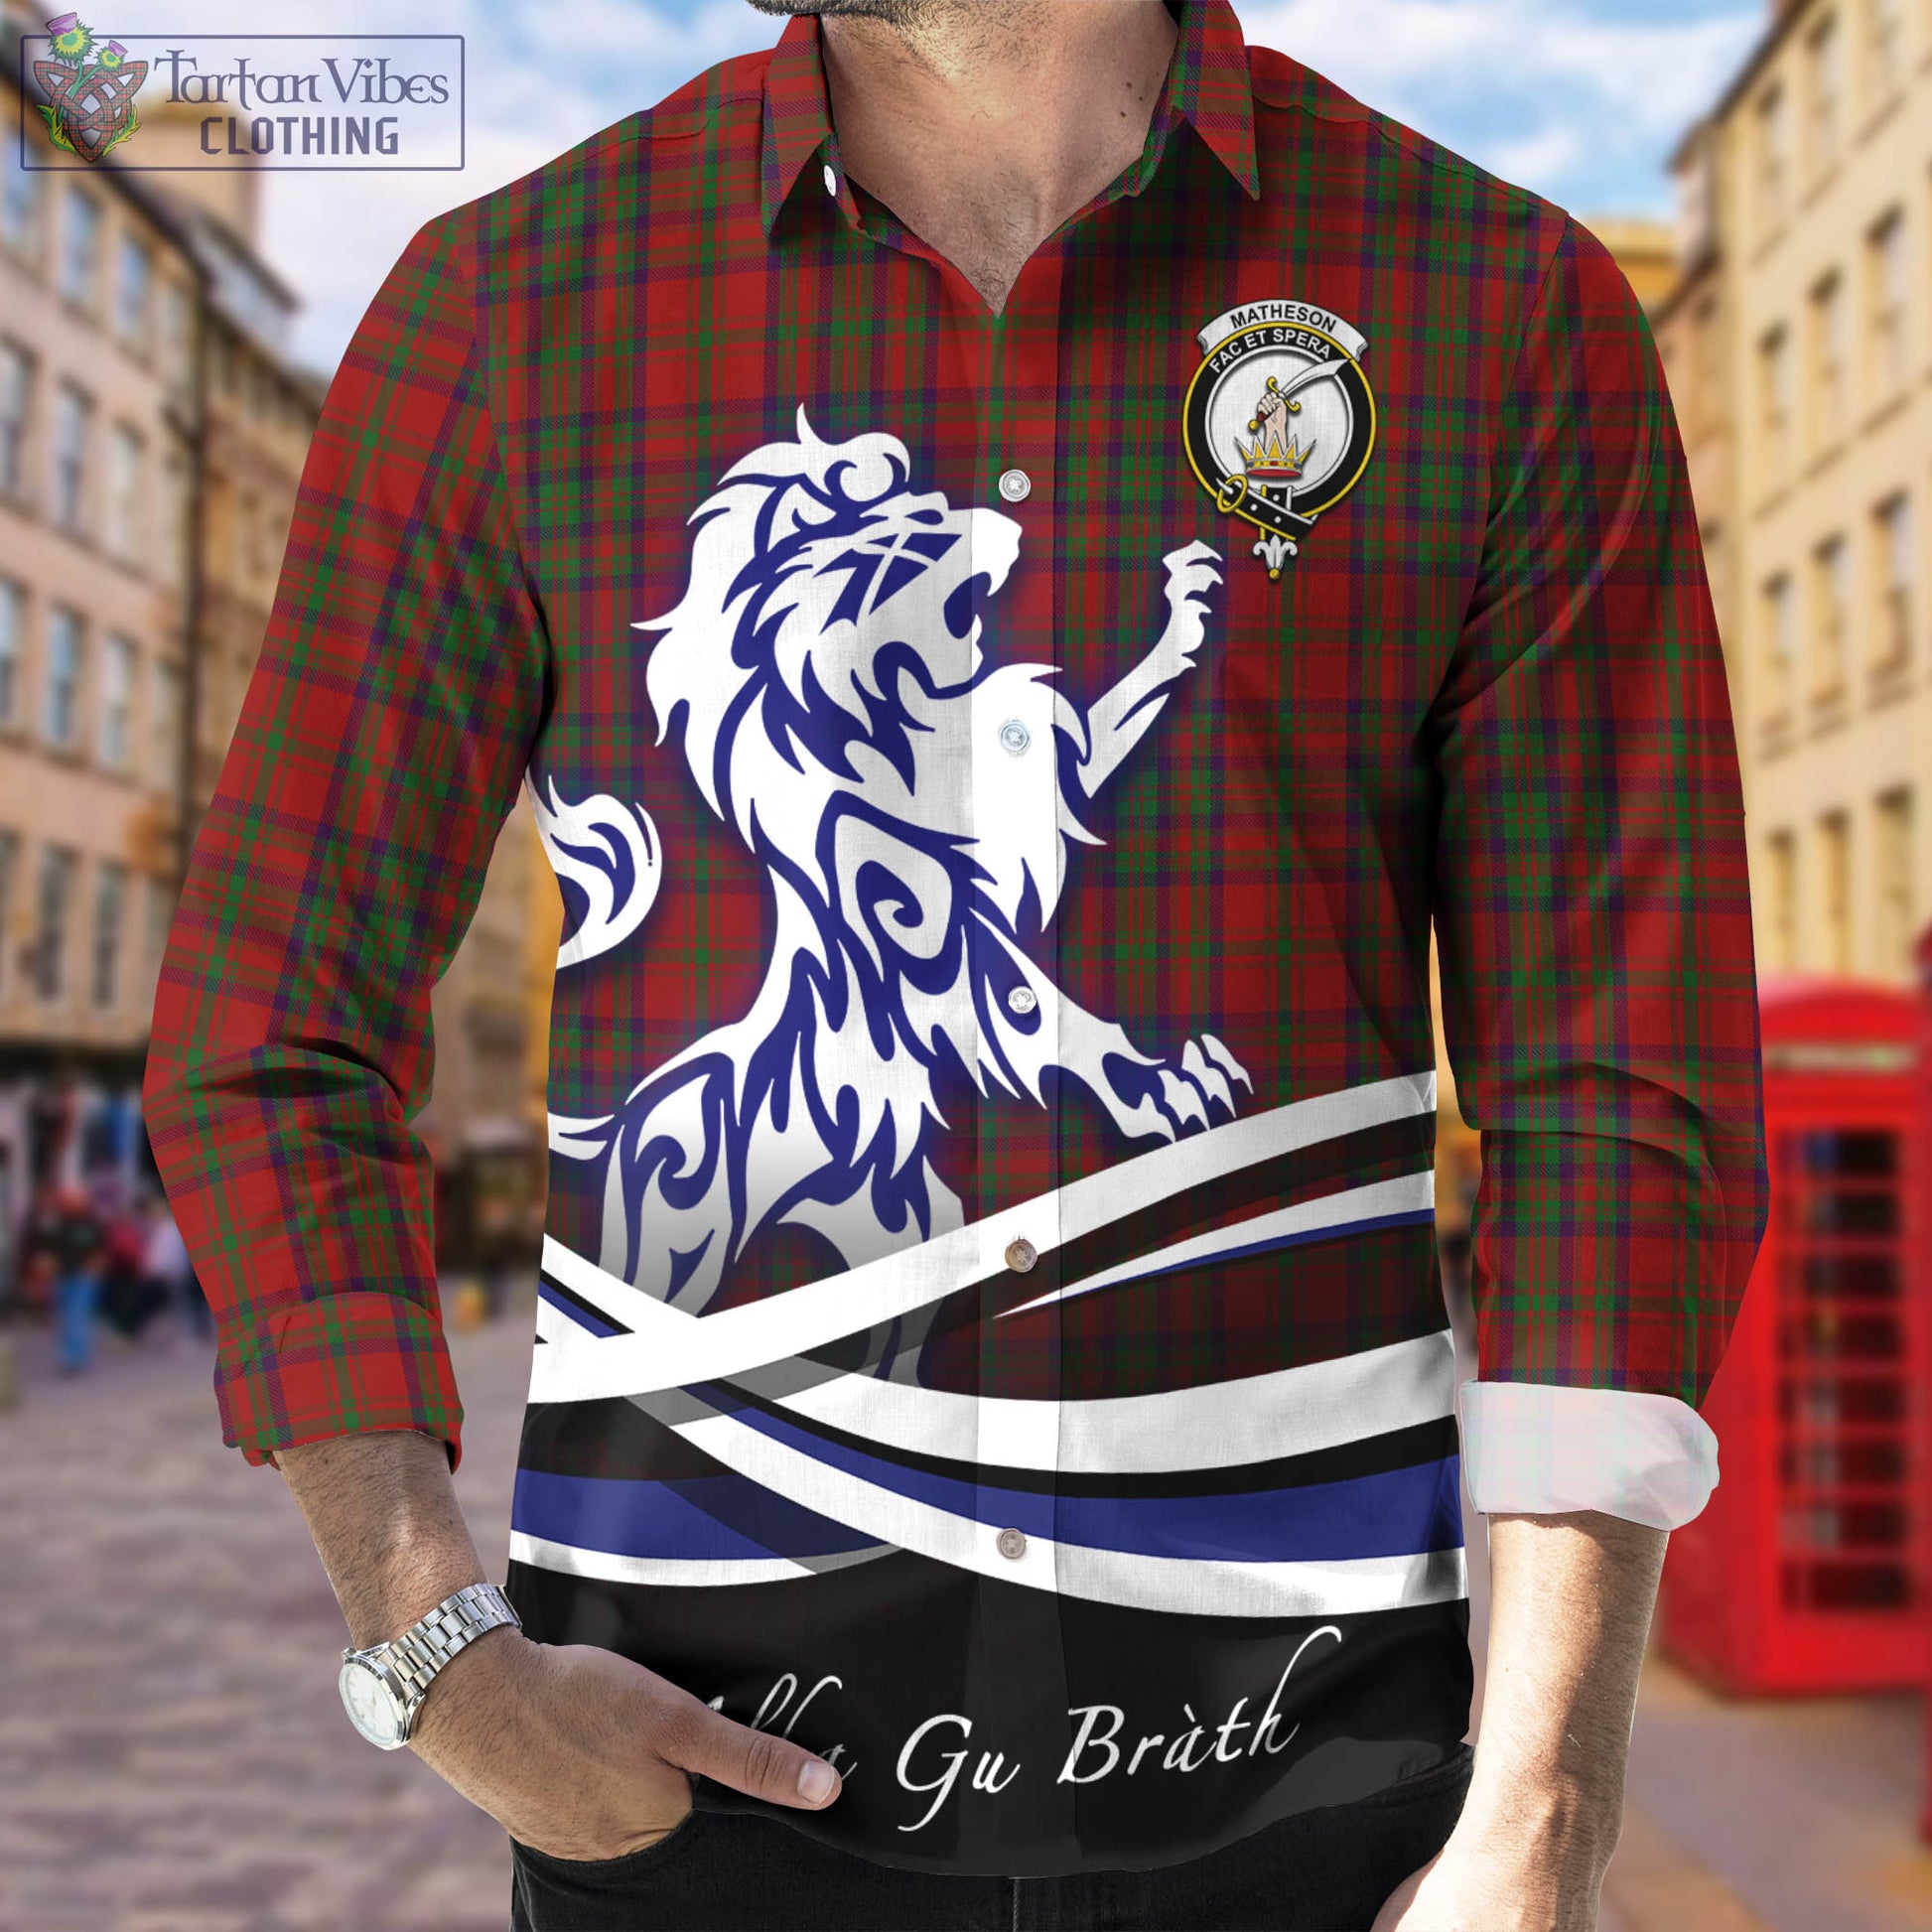 matheson-dress-tartan-long-sleeve-button-up-shirt-with-alba-gu-brath-regal-lion-emblem